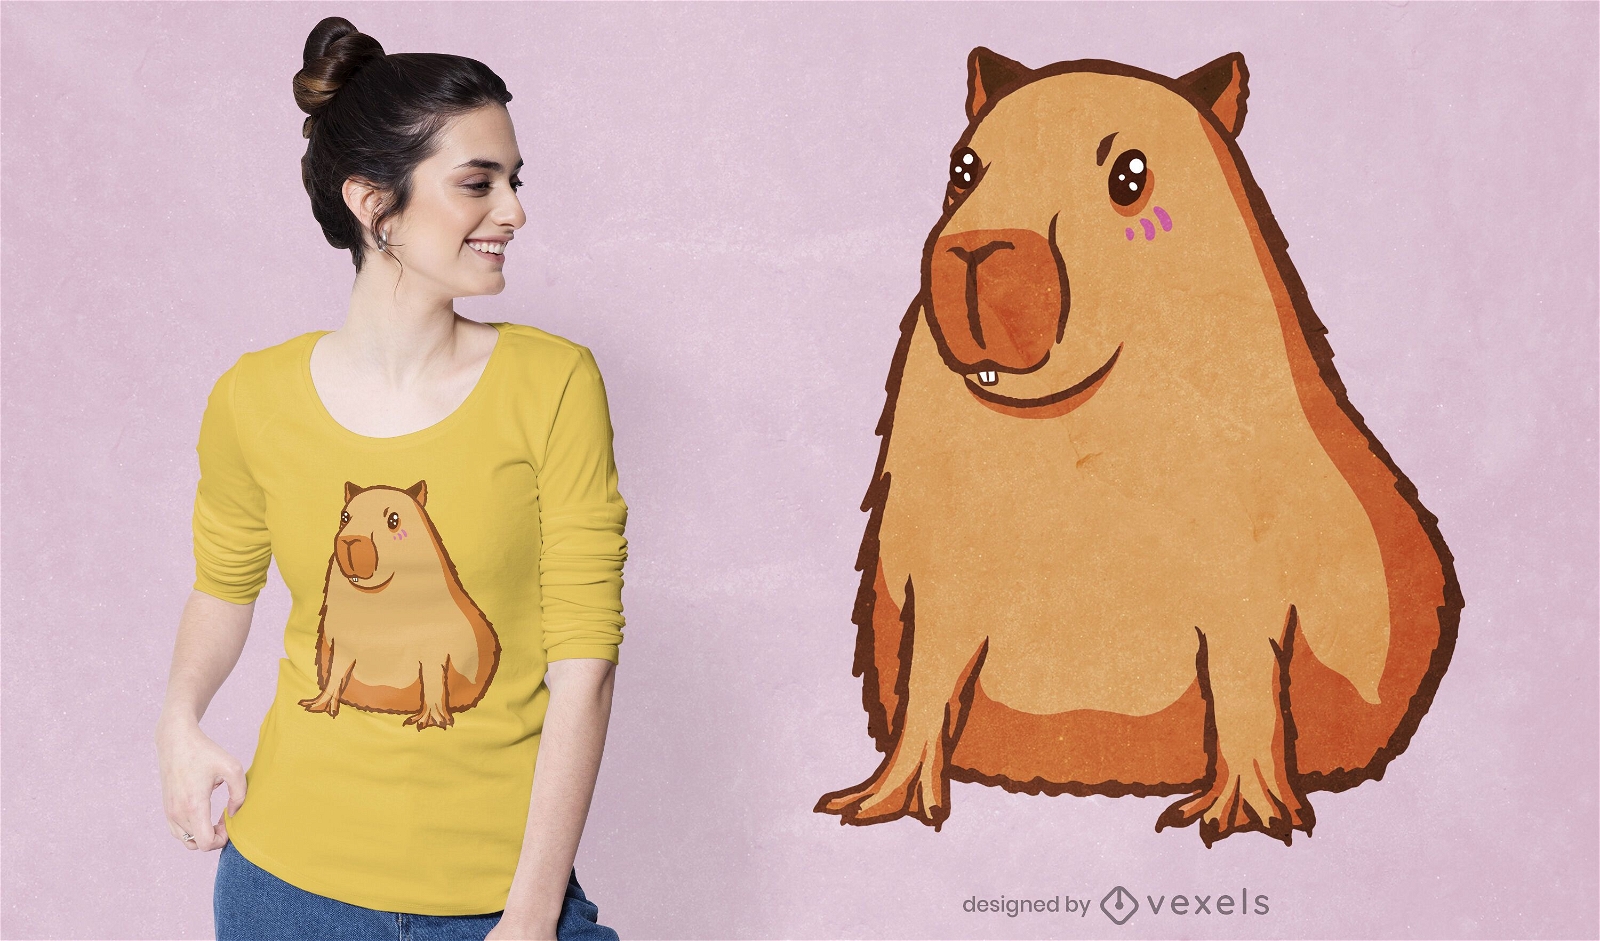 Cute capybara t-shirt design